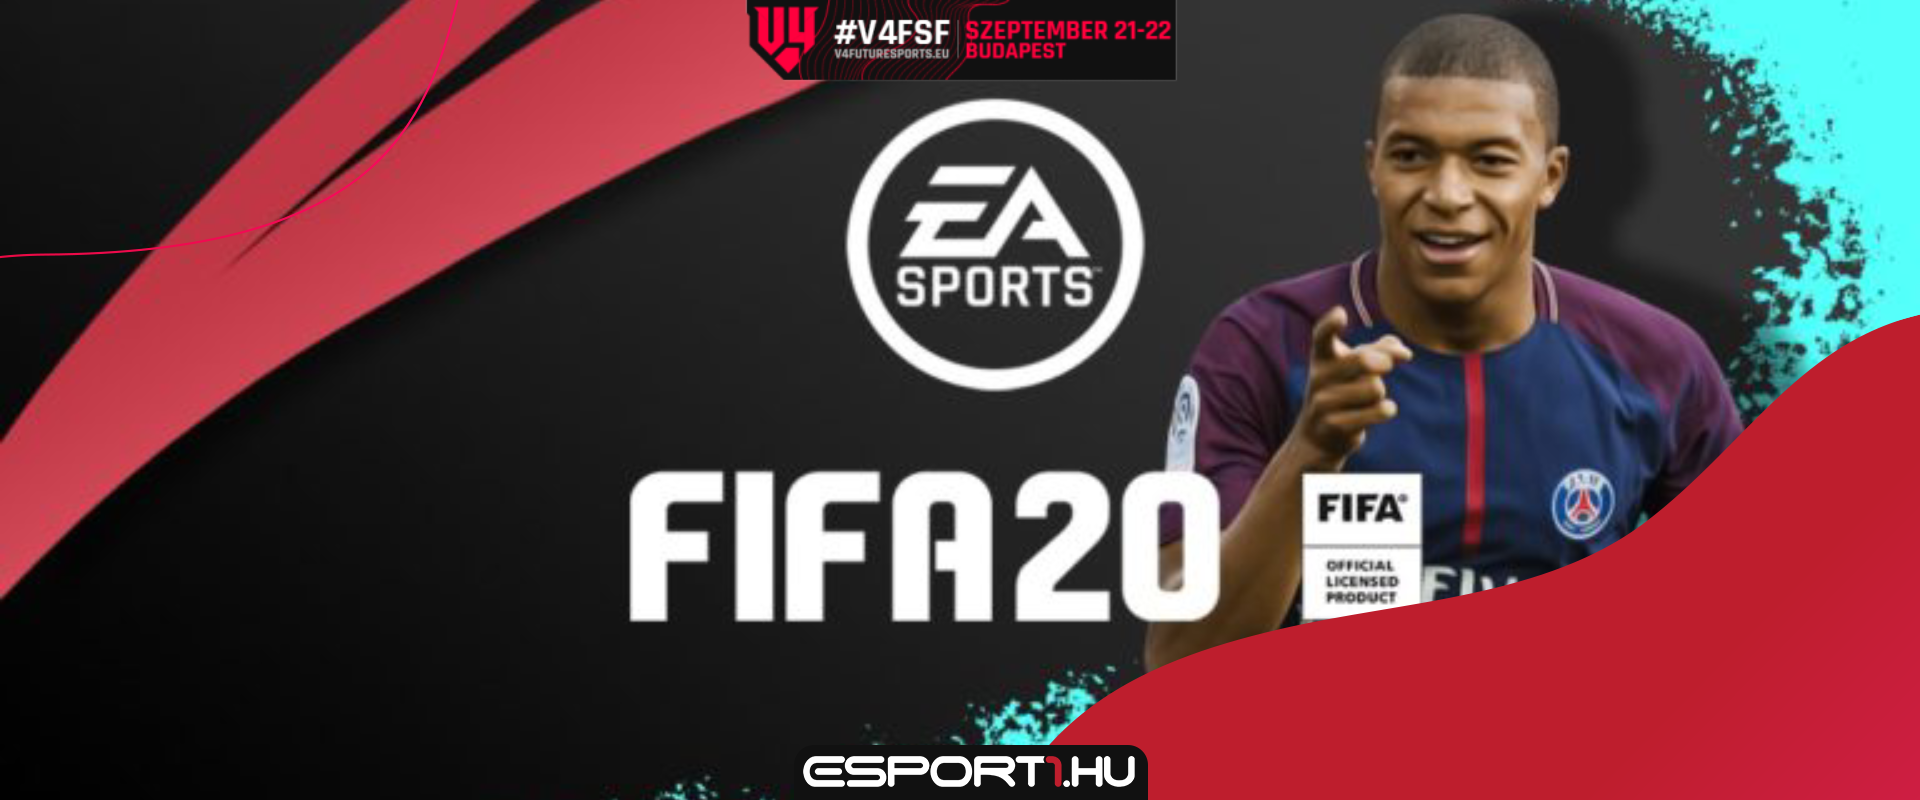 Az utolsó FUT19 promóval FIFA20 jutalom szerezhető a következő három hétben!